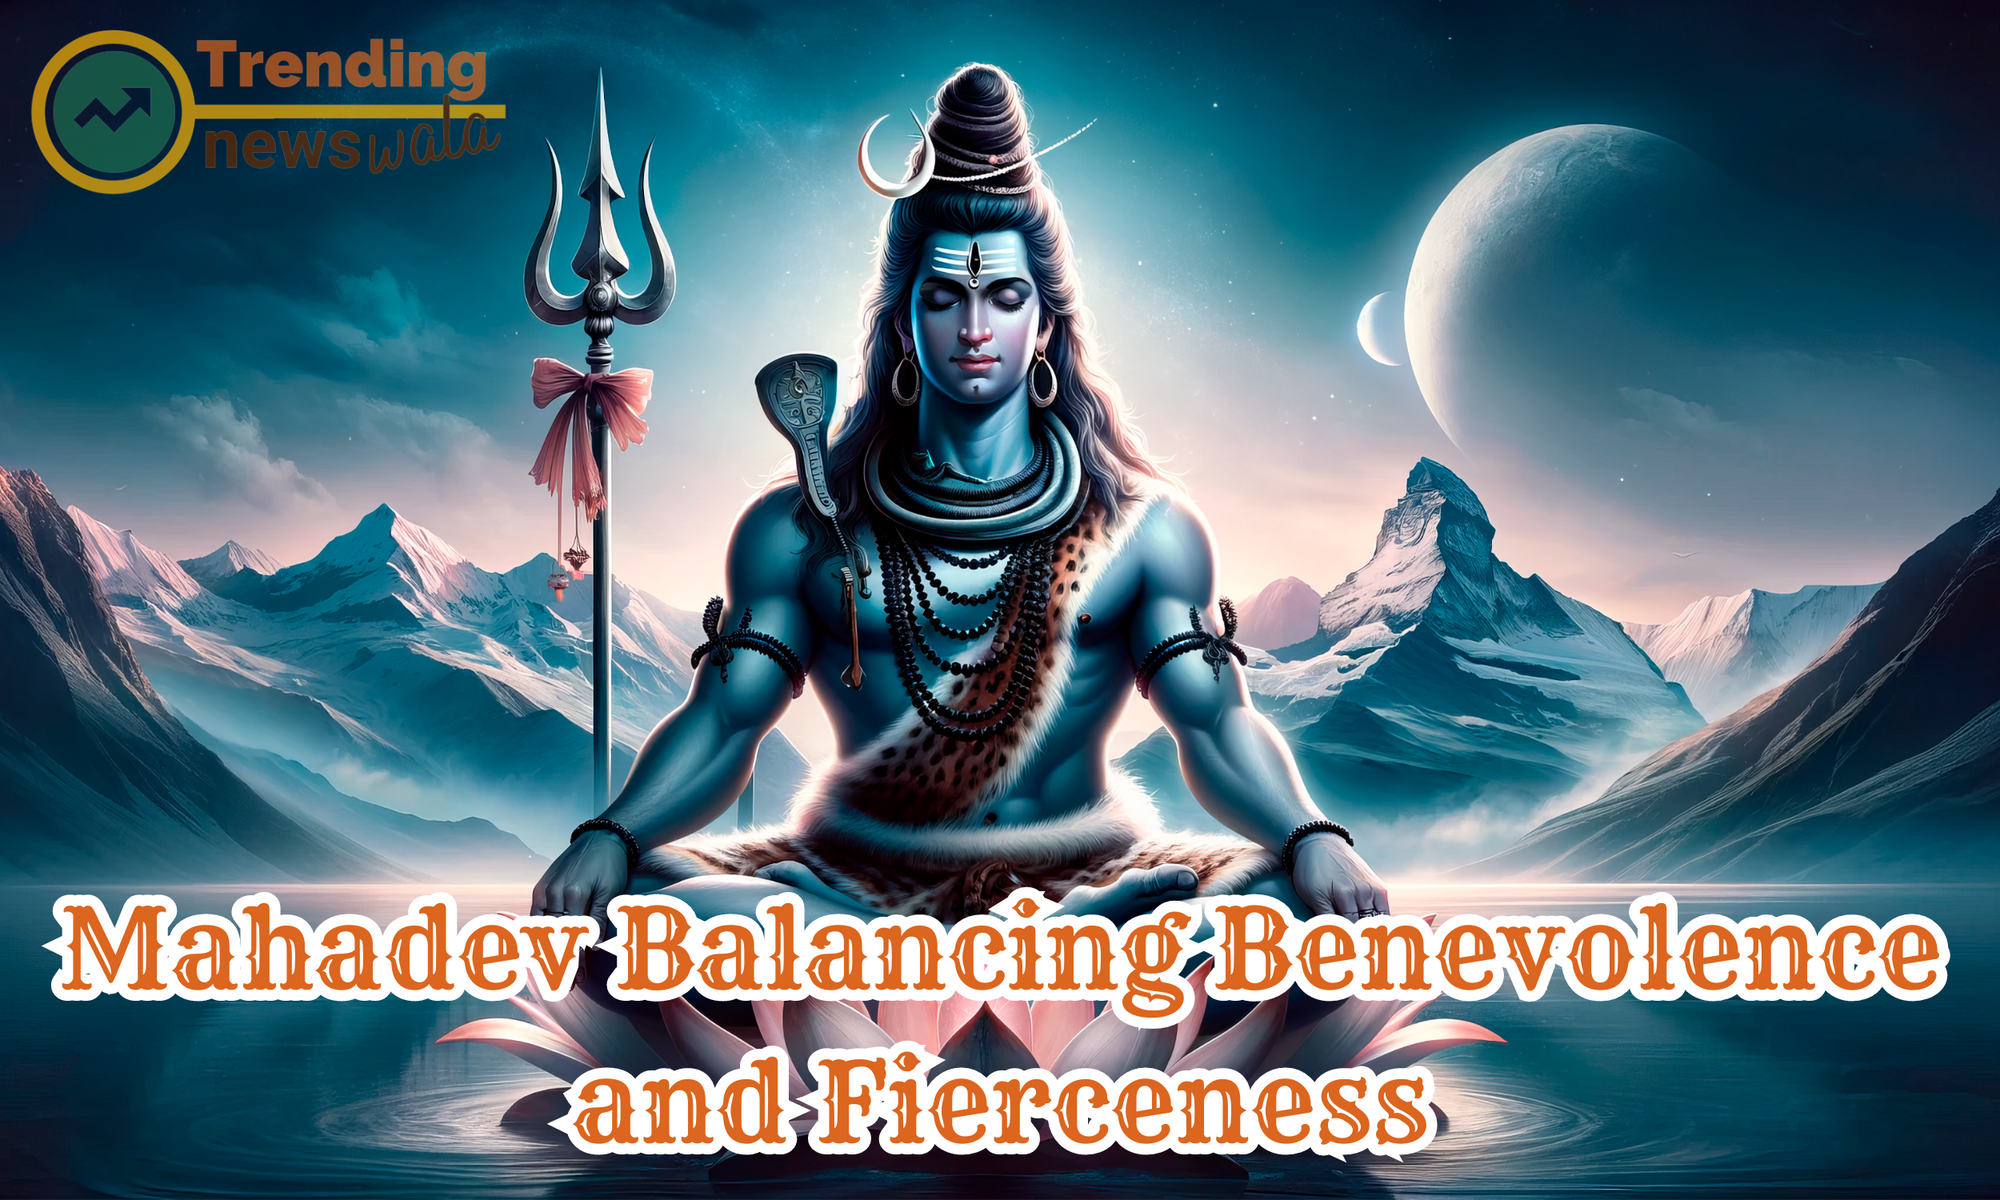 Mahadev involves a harmonious balance between benevolence and fierceness